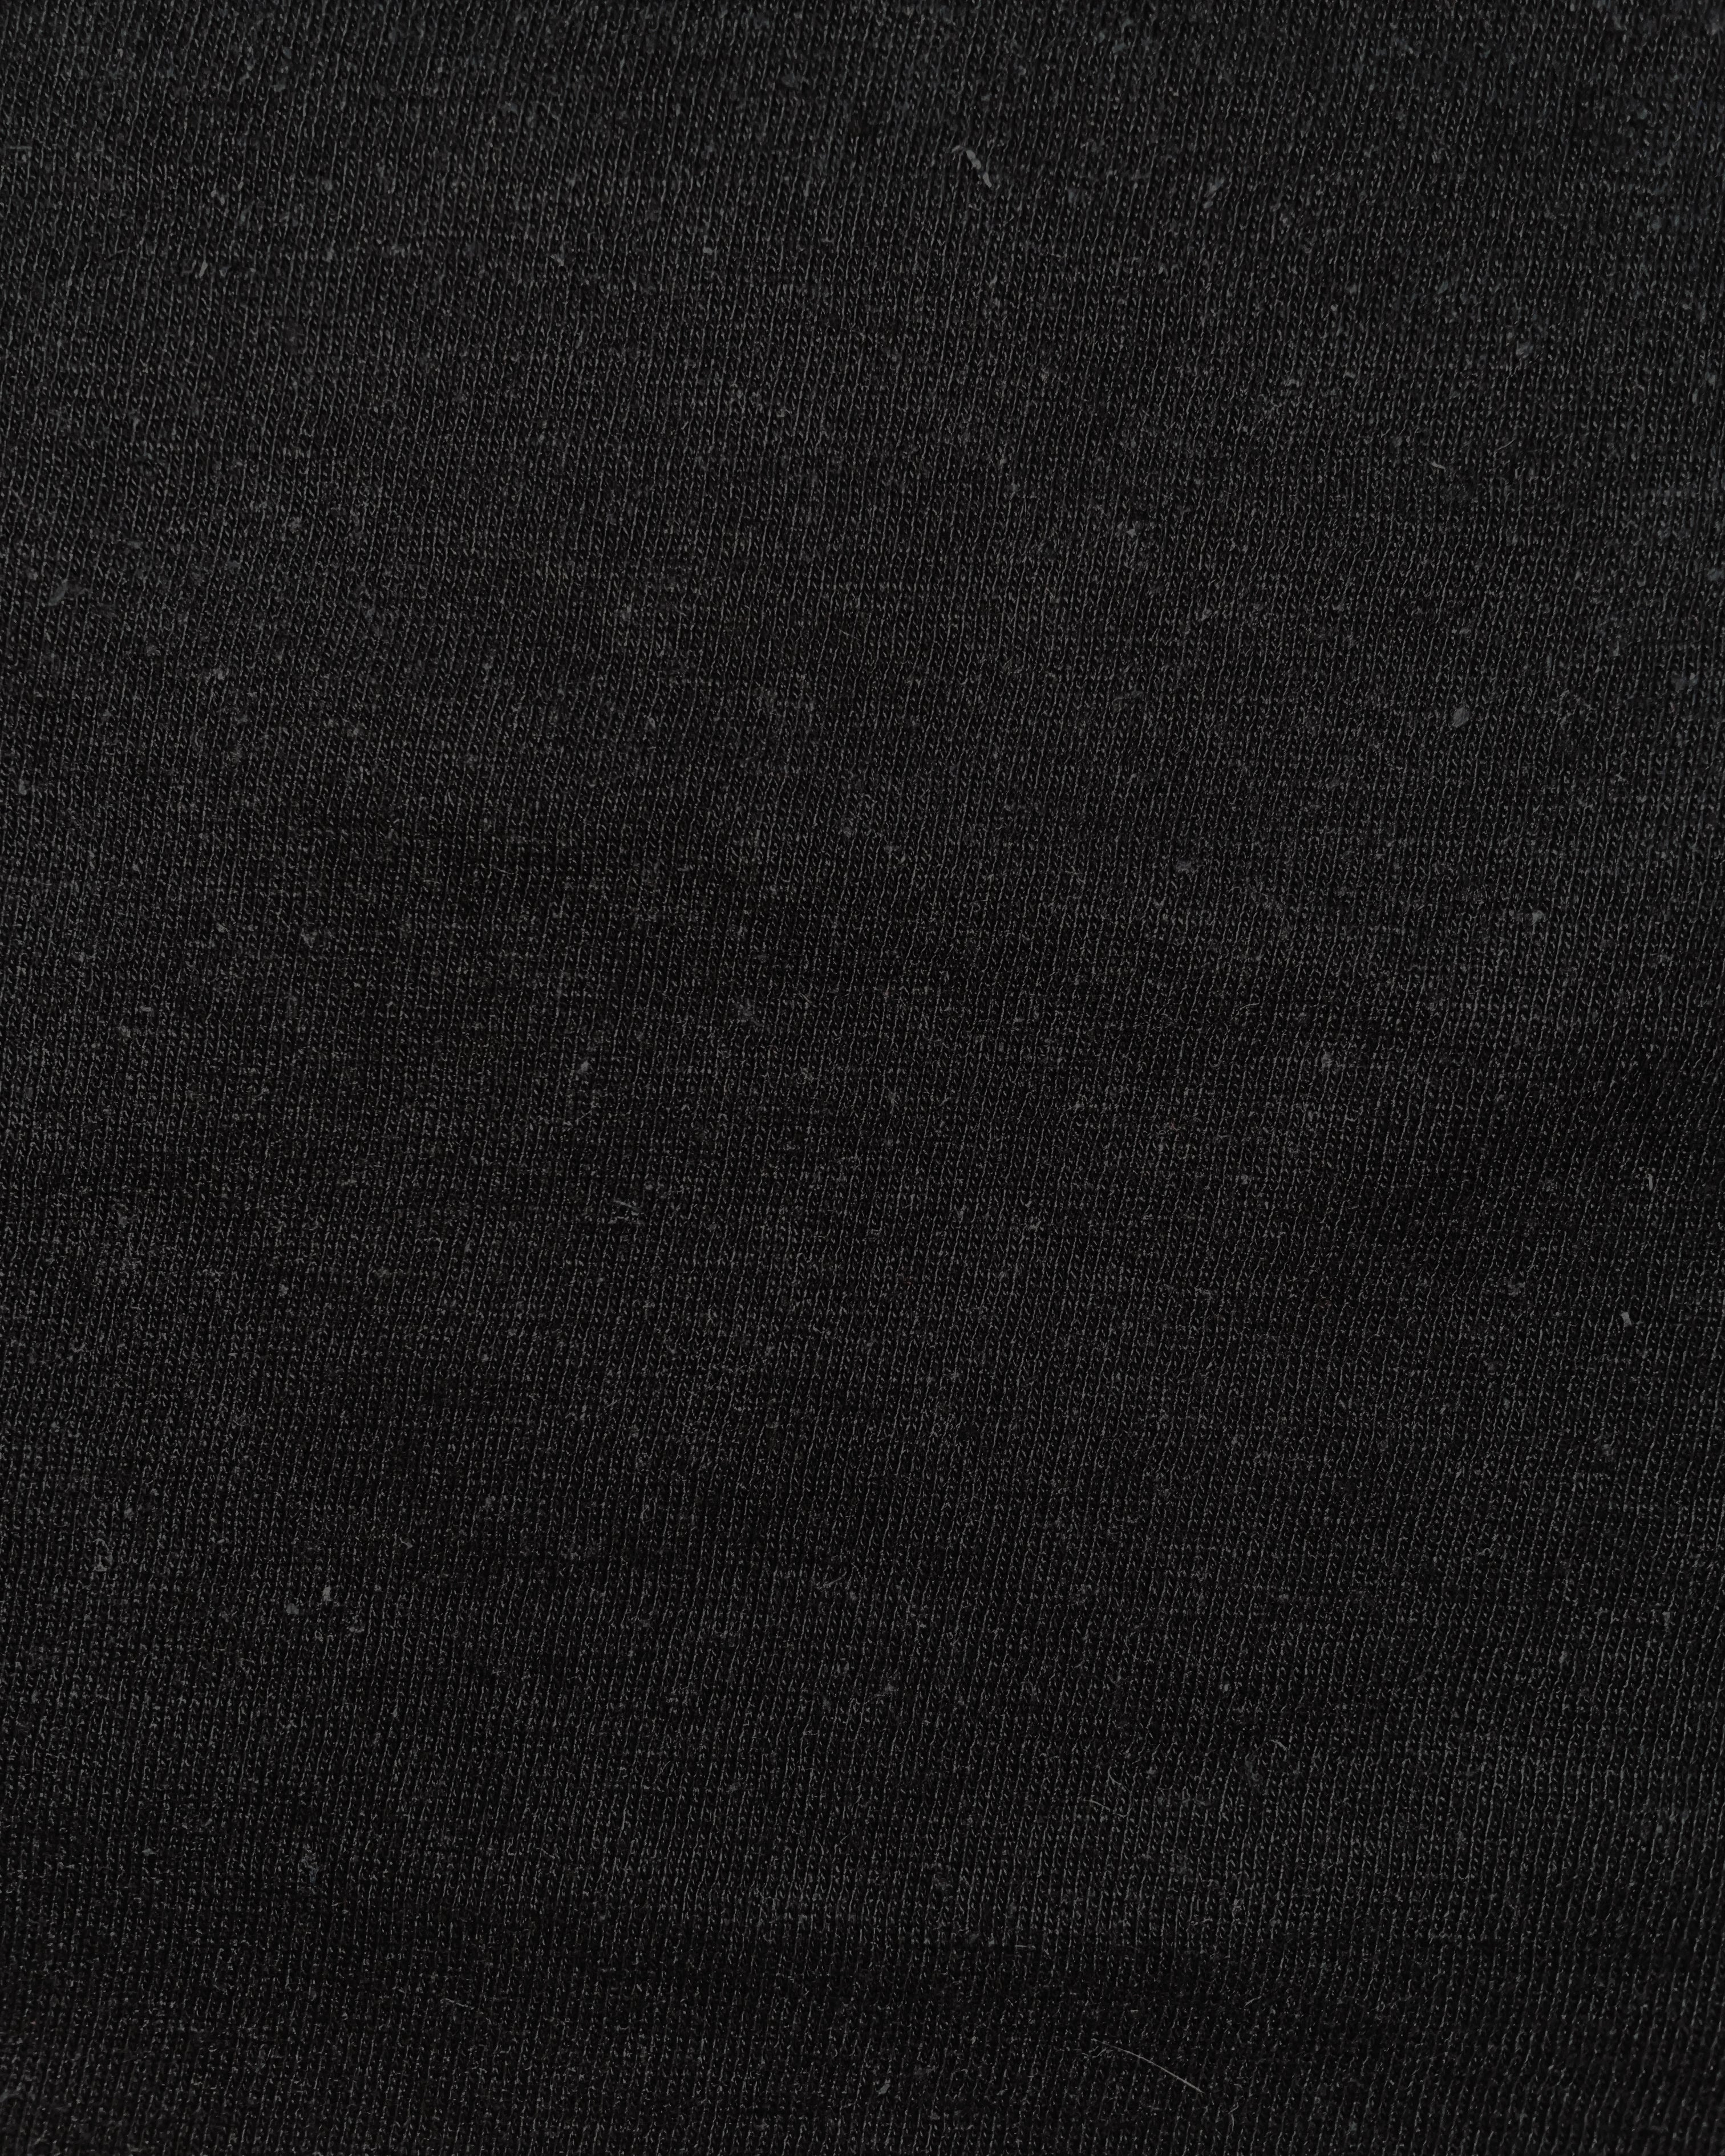 Fabric | Black Cotton Hemp